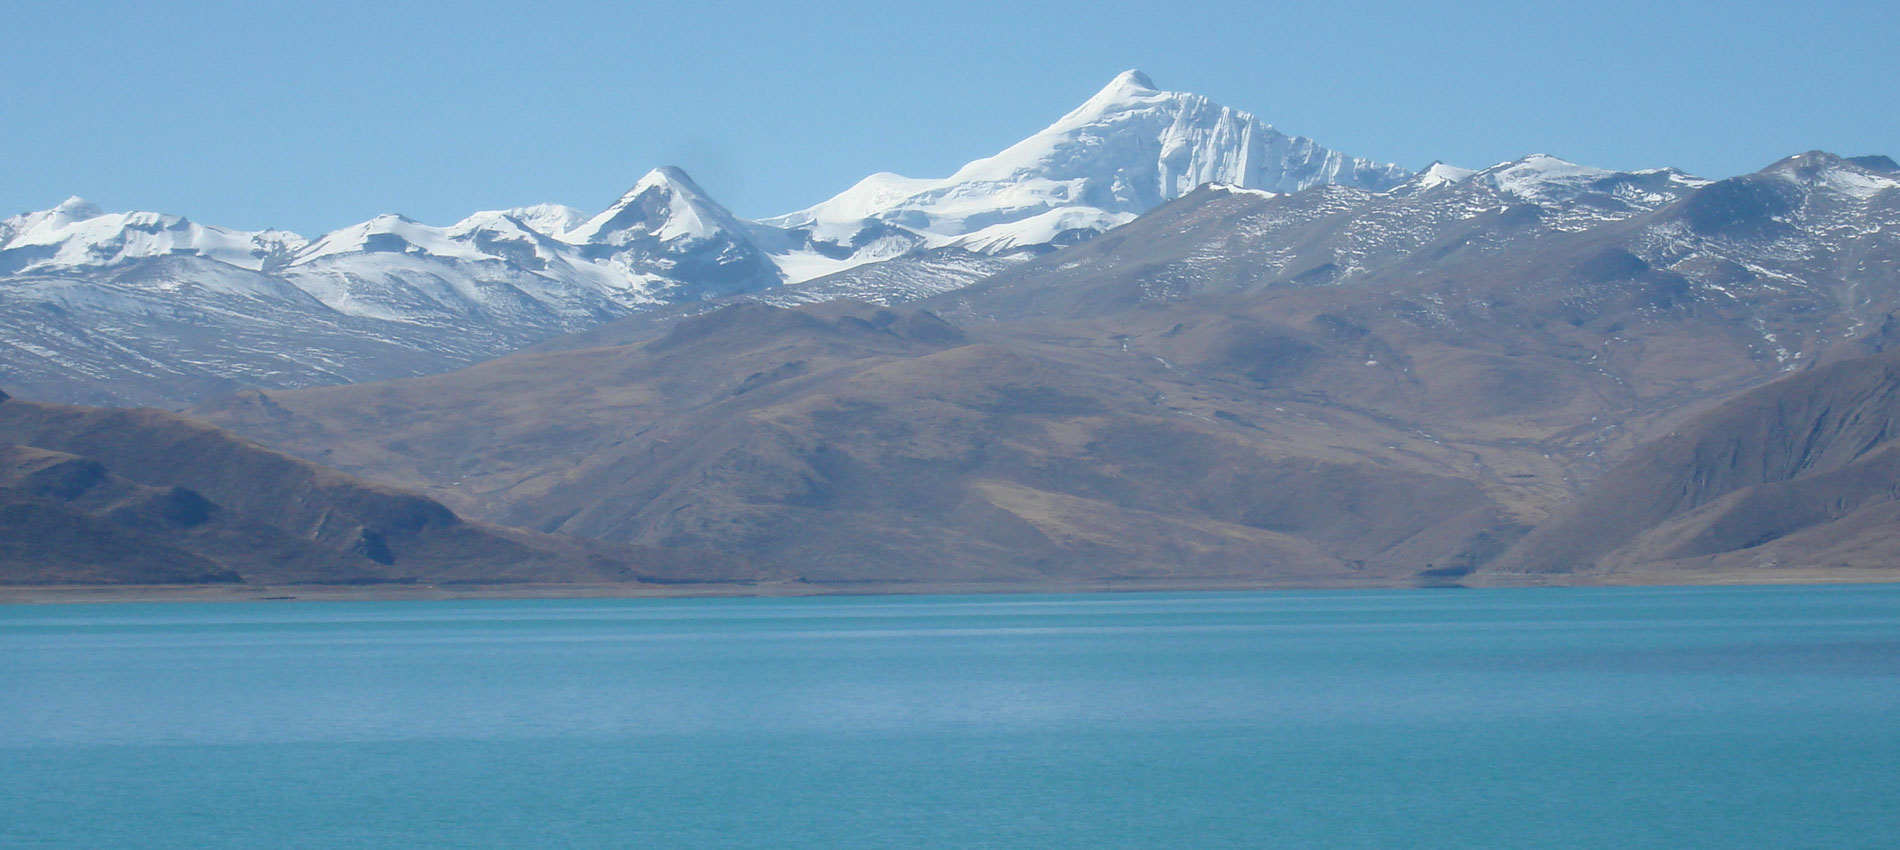 Mt. Kailash Mansarovar Lake Tour